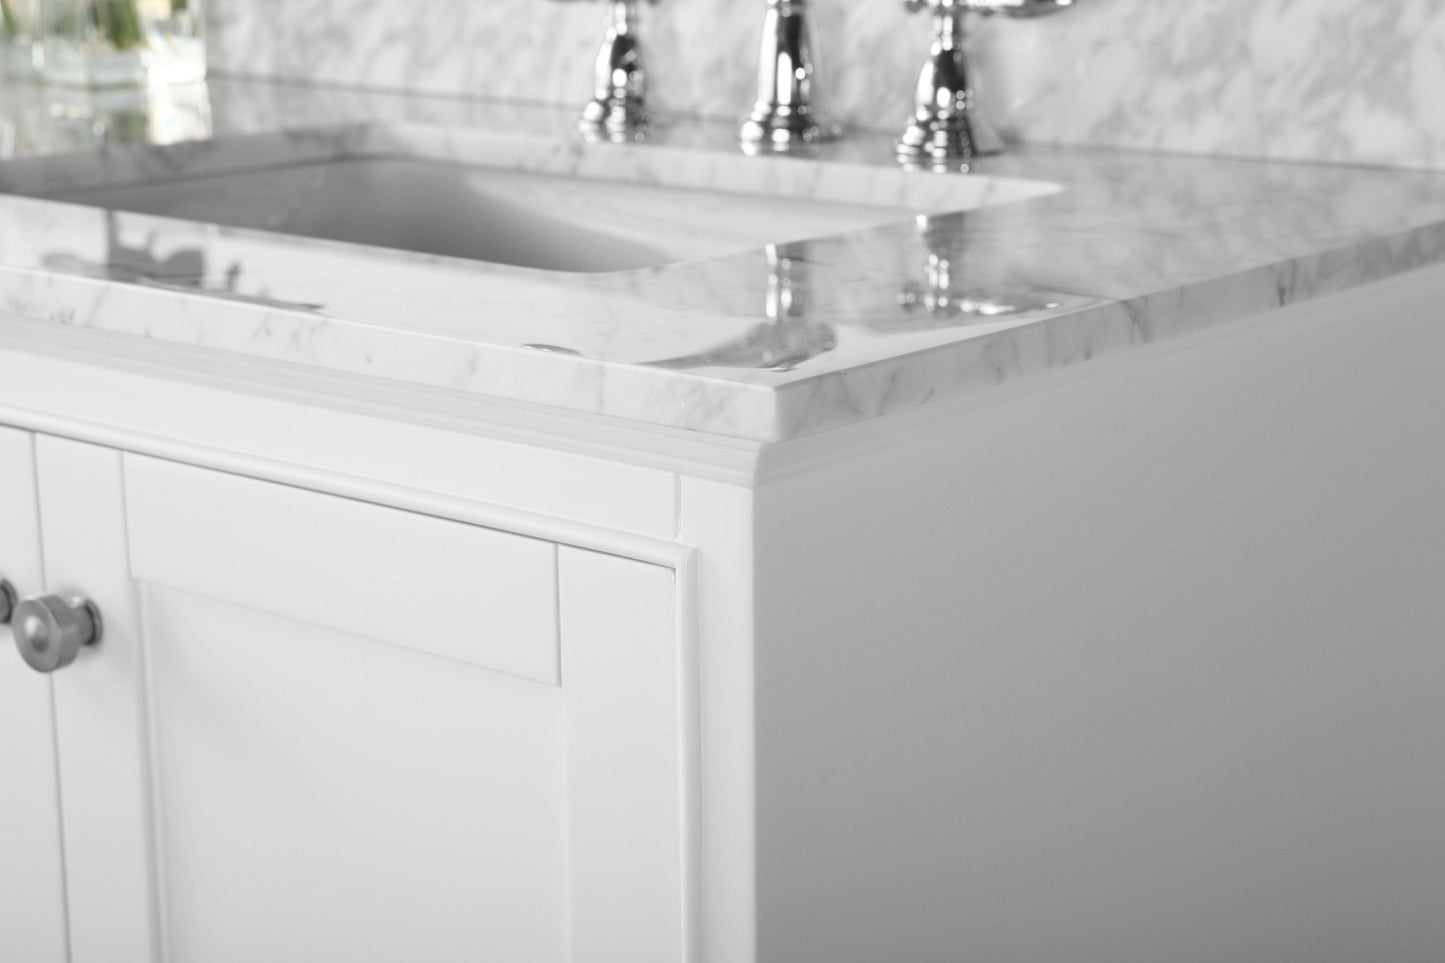 Ancerra Designs Audrey 72 in. Bath Vanity Set in White